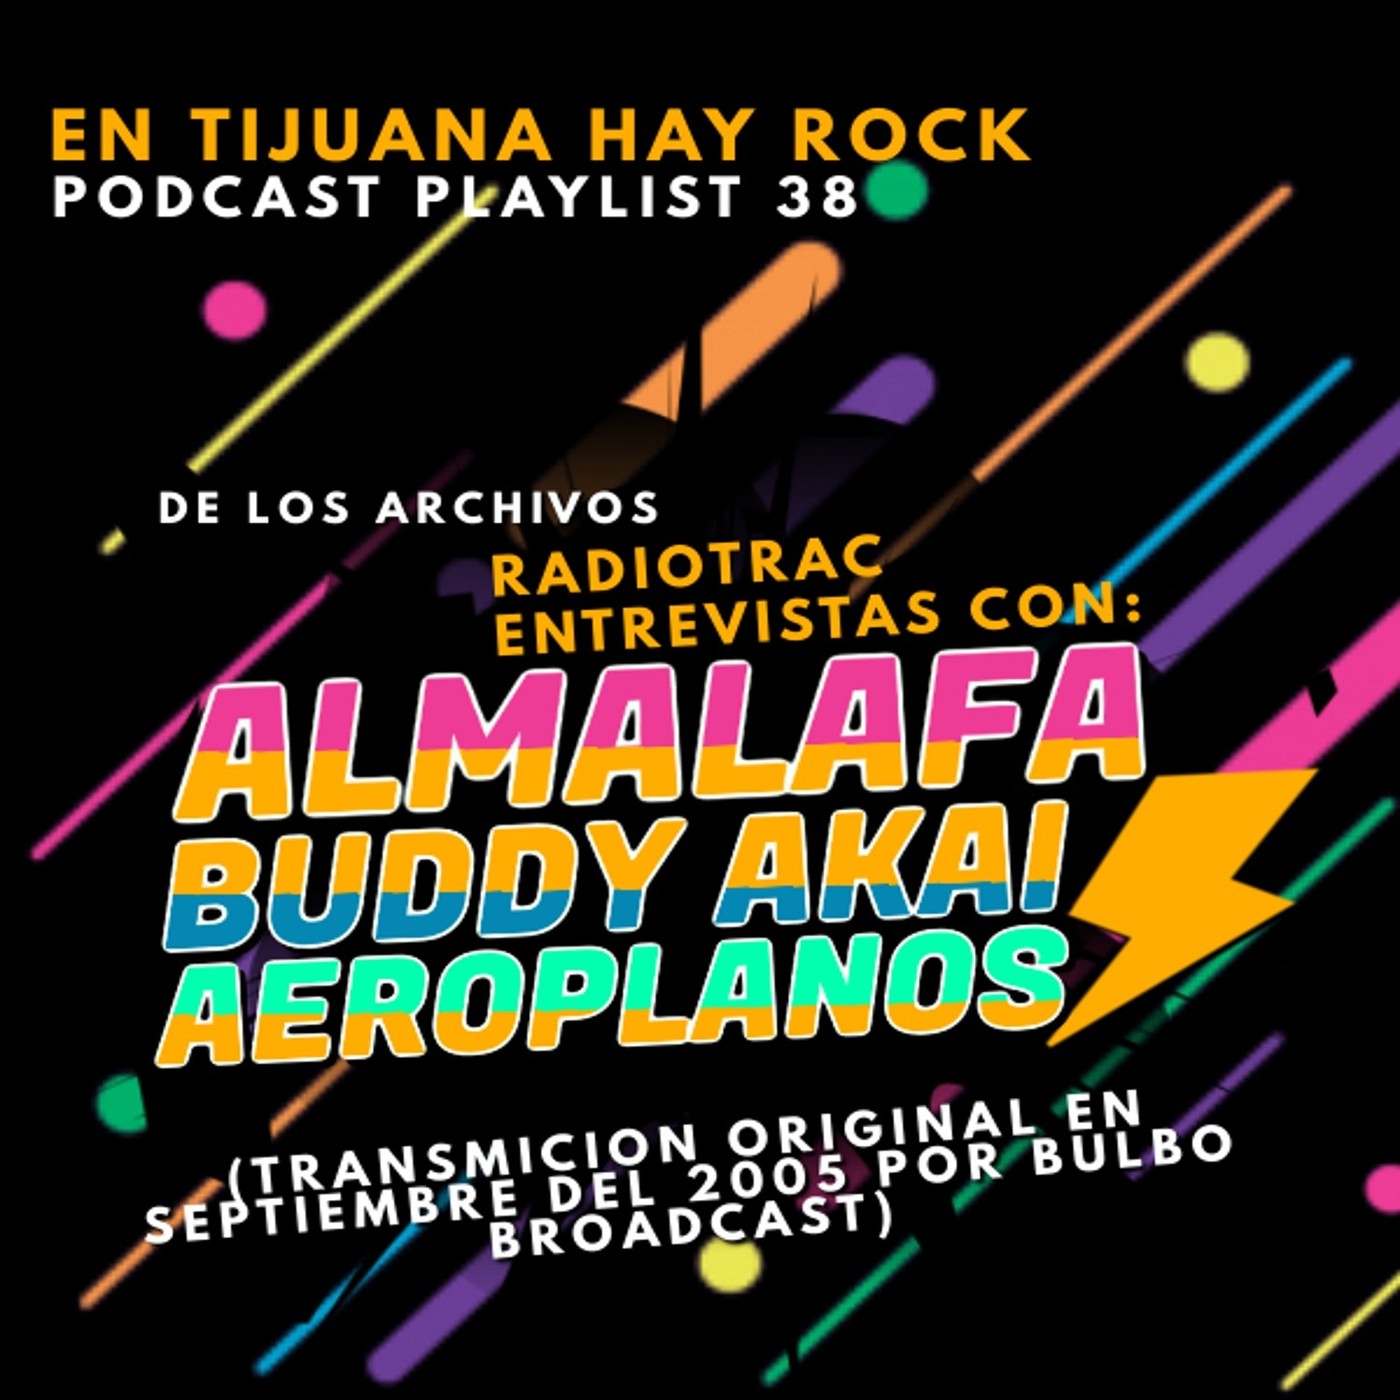 En Tijuana Hay Rock Podcast: Playlist - Programa #38: Entrevistas Retro con Almalafa, Buddy Akai y Aeroplanos Image